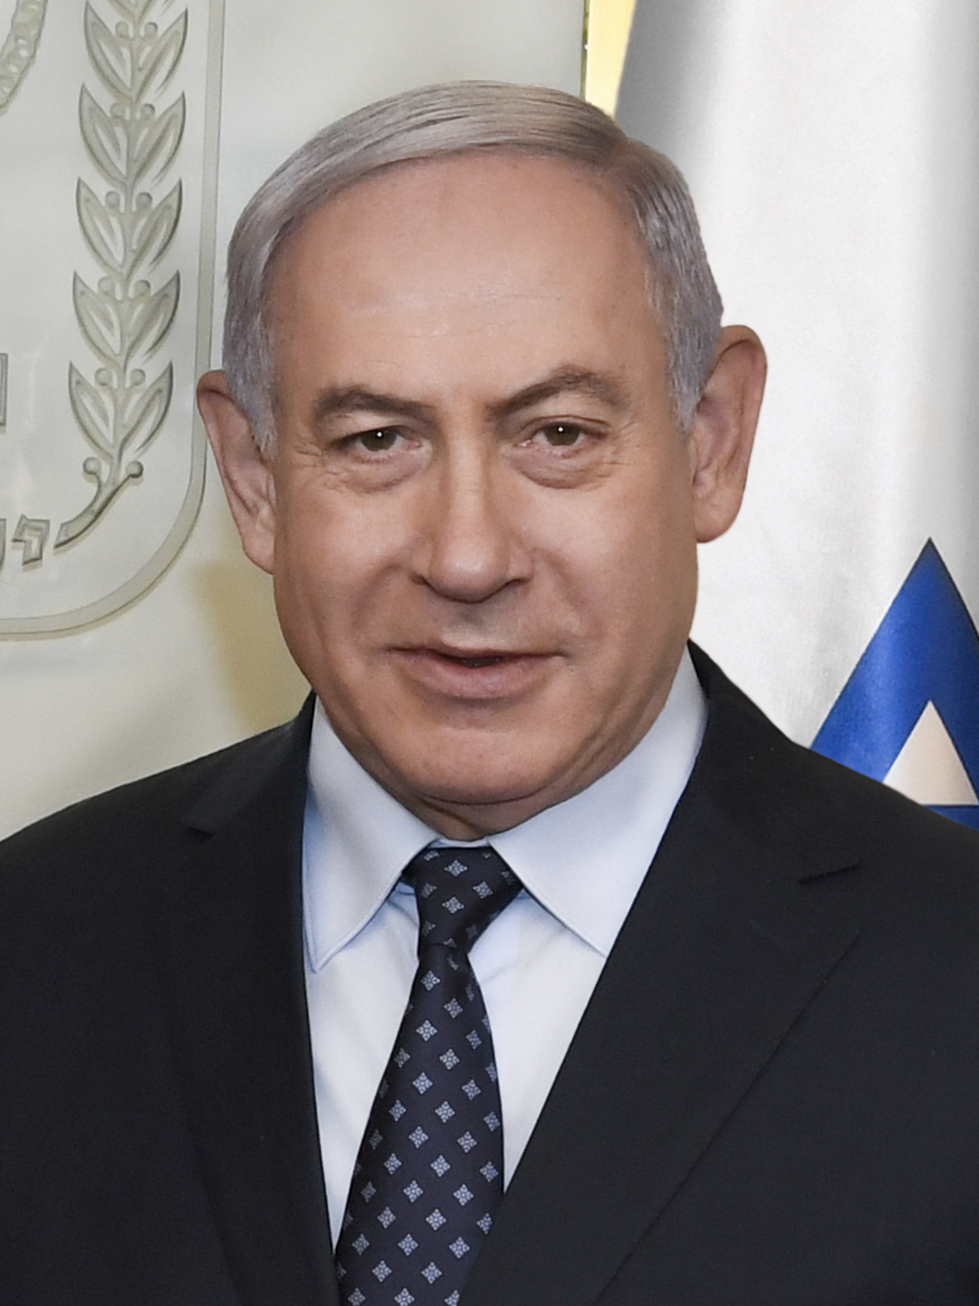 Benjamin Netanyahu 2019 cropped